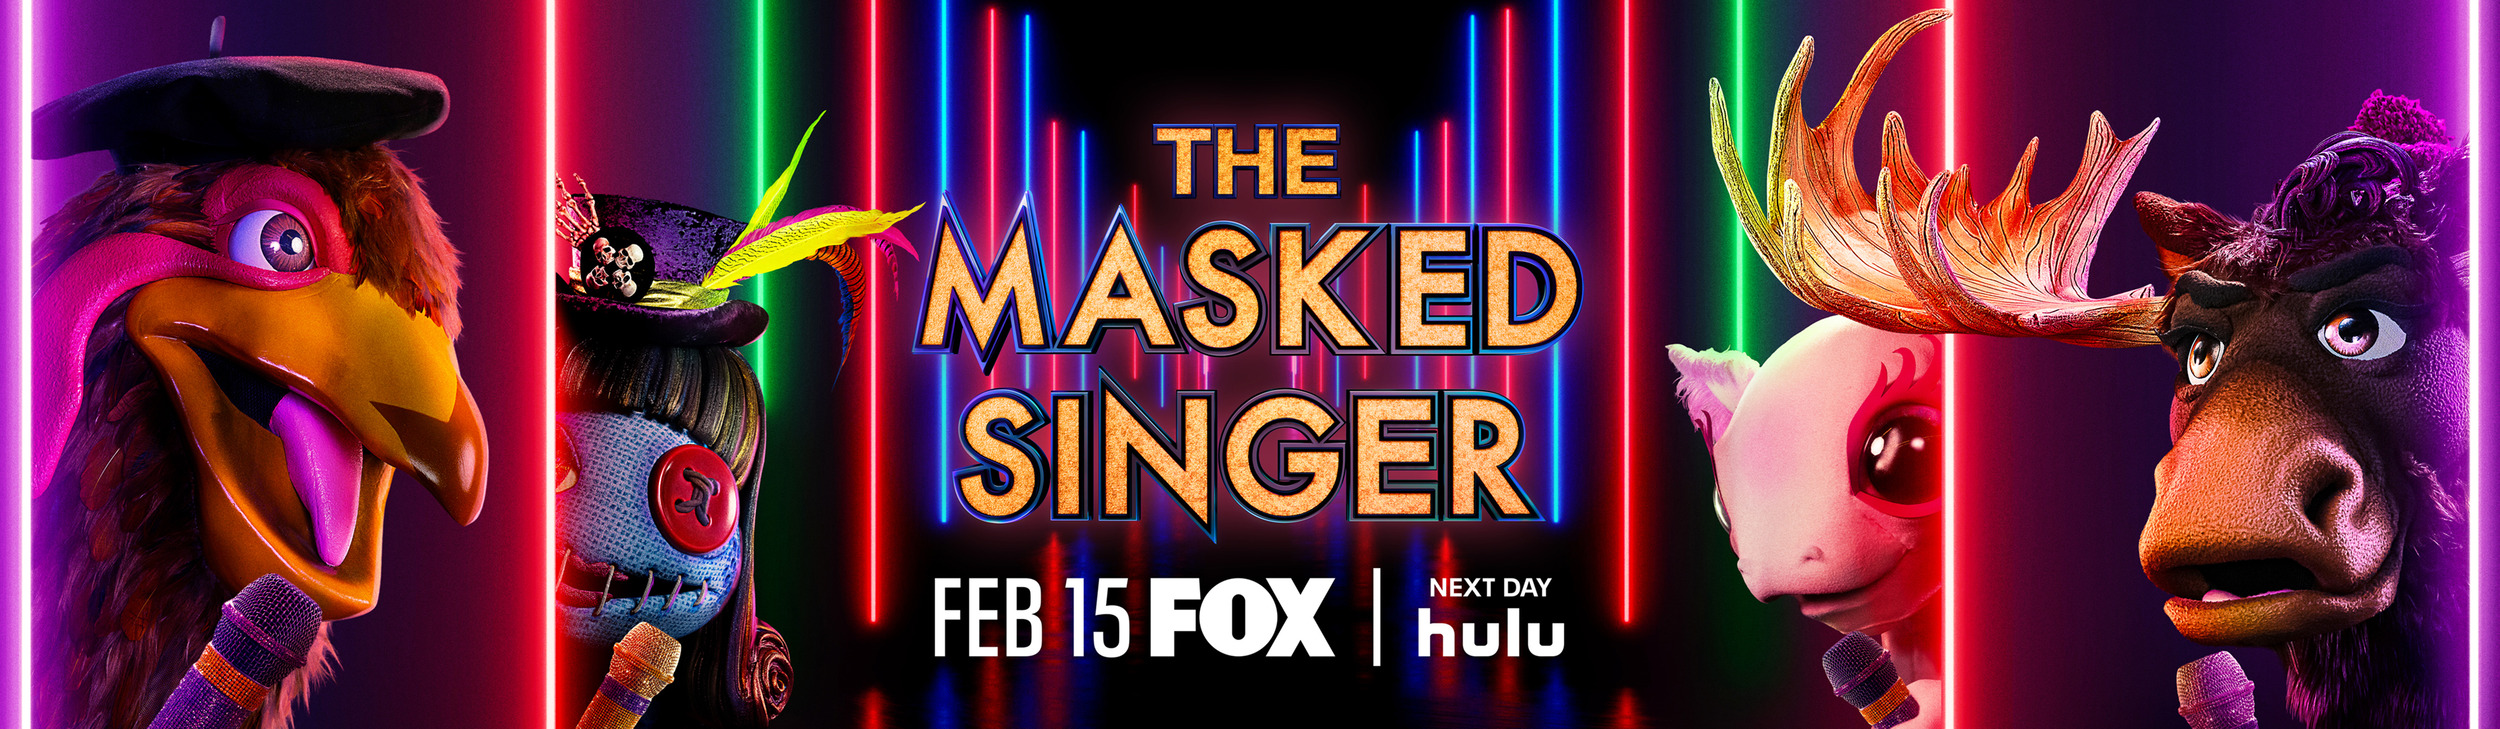 Mega Sized TV Poster Image for The Masked Singer (#15 of 17)